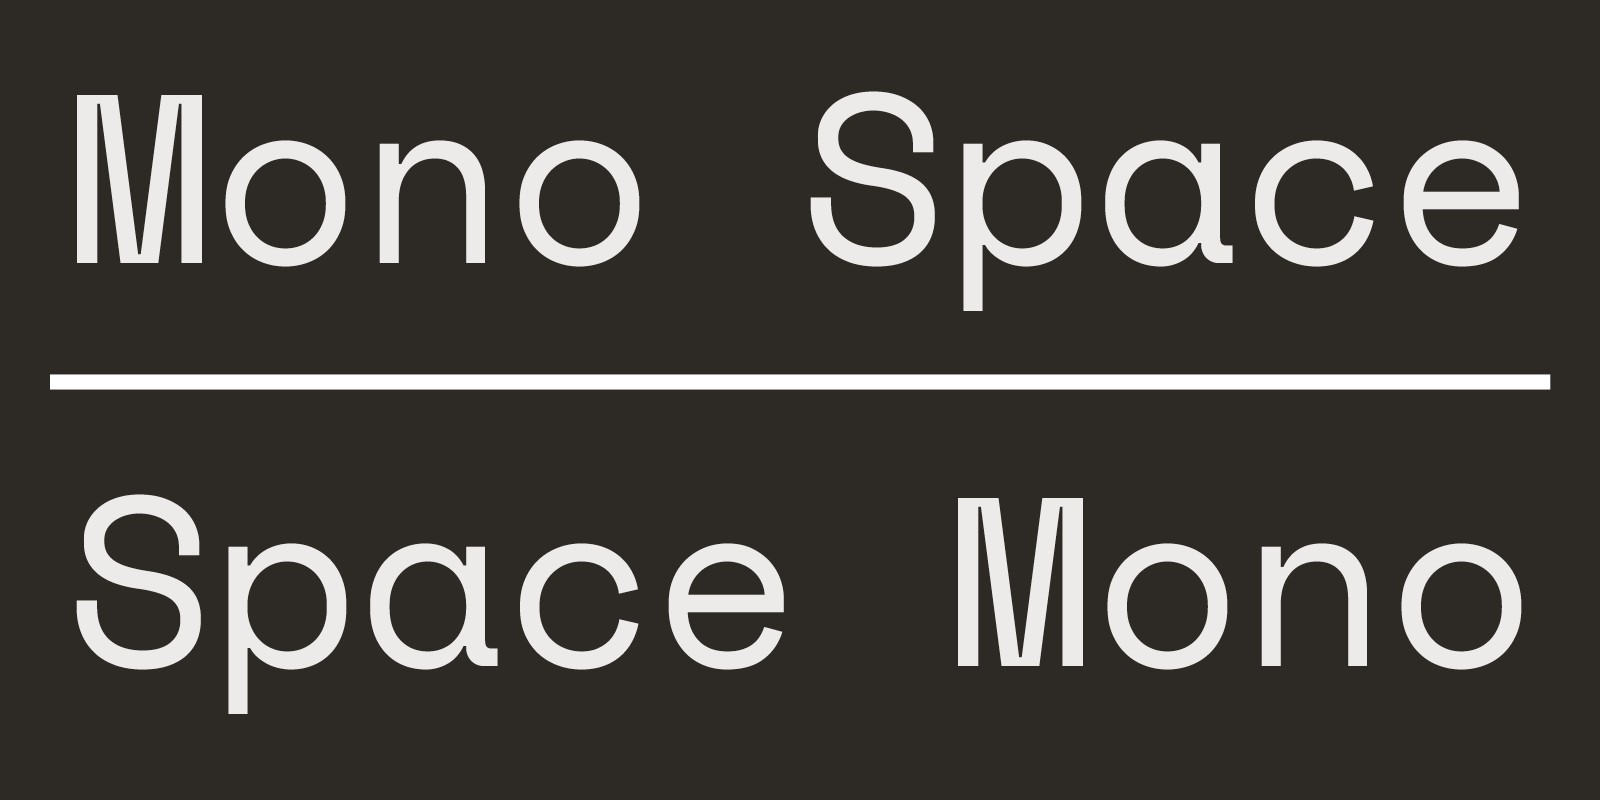 Ejemplo de fuente Space Mono